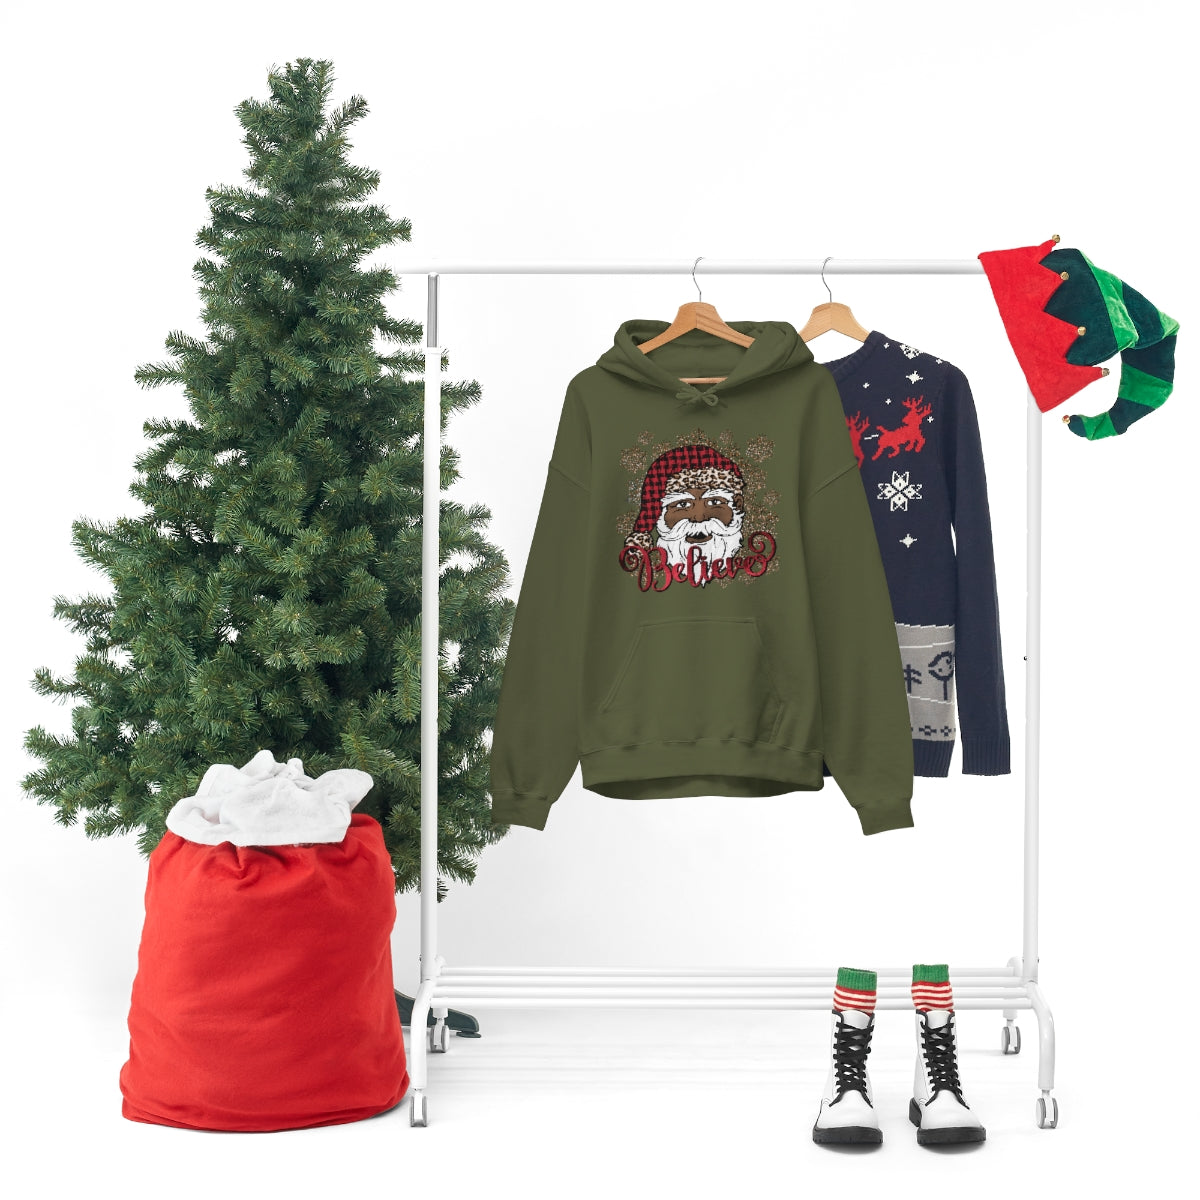 Believe Black Santa Unisex Hooded Sweatshirt